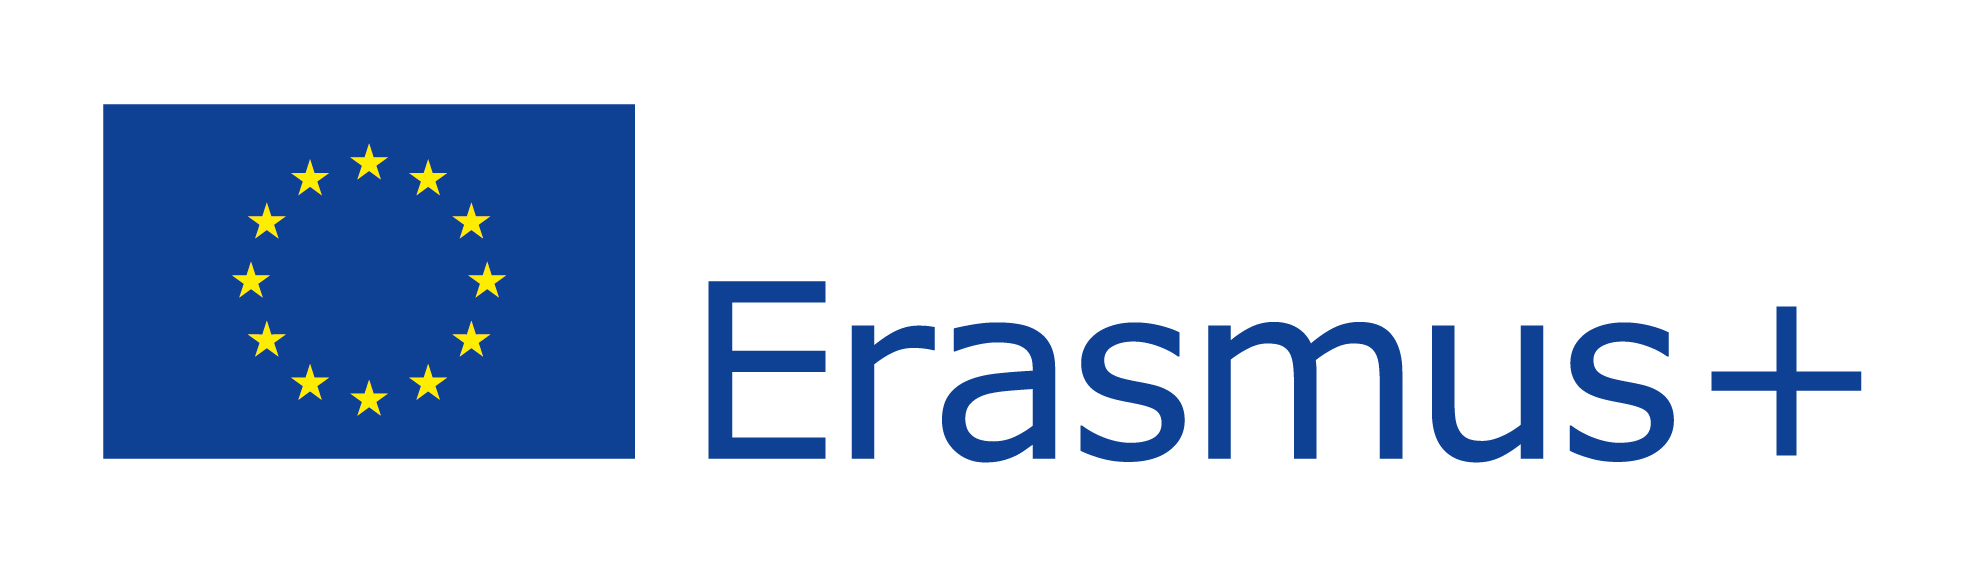 Ersmus Logo